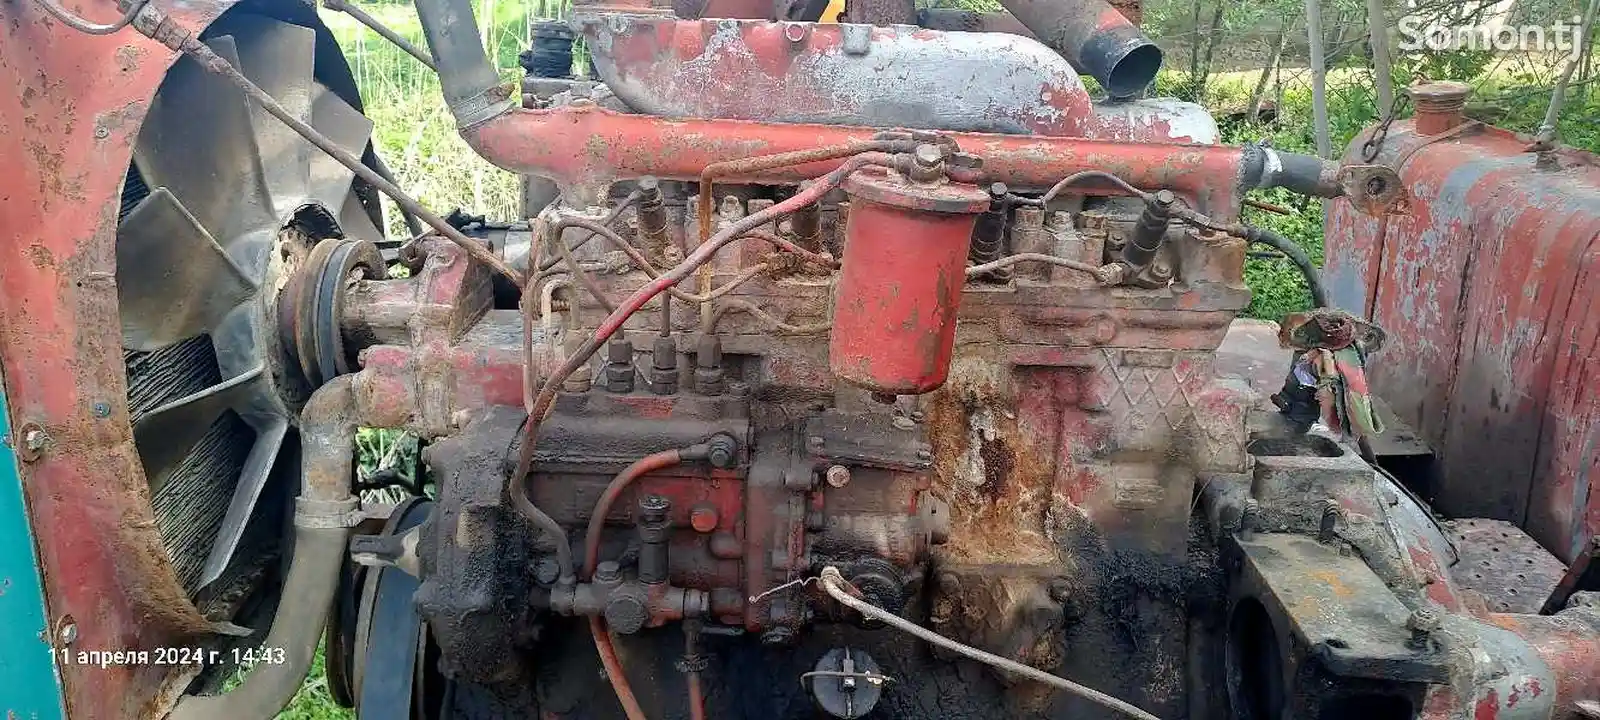 Двигатель от трактора-4